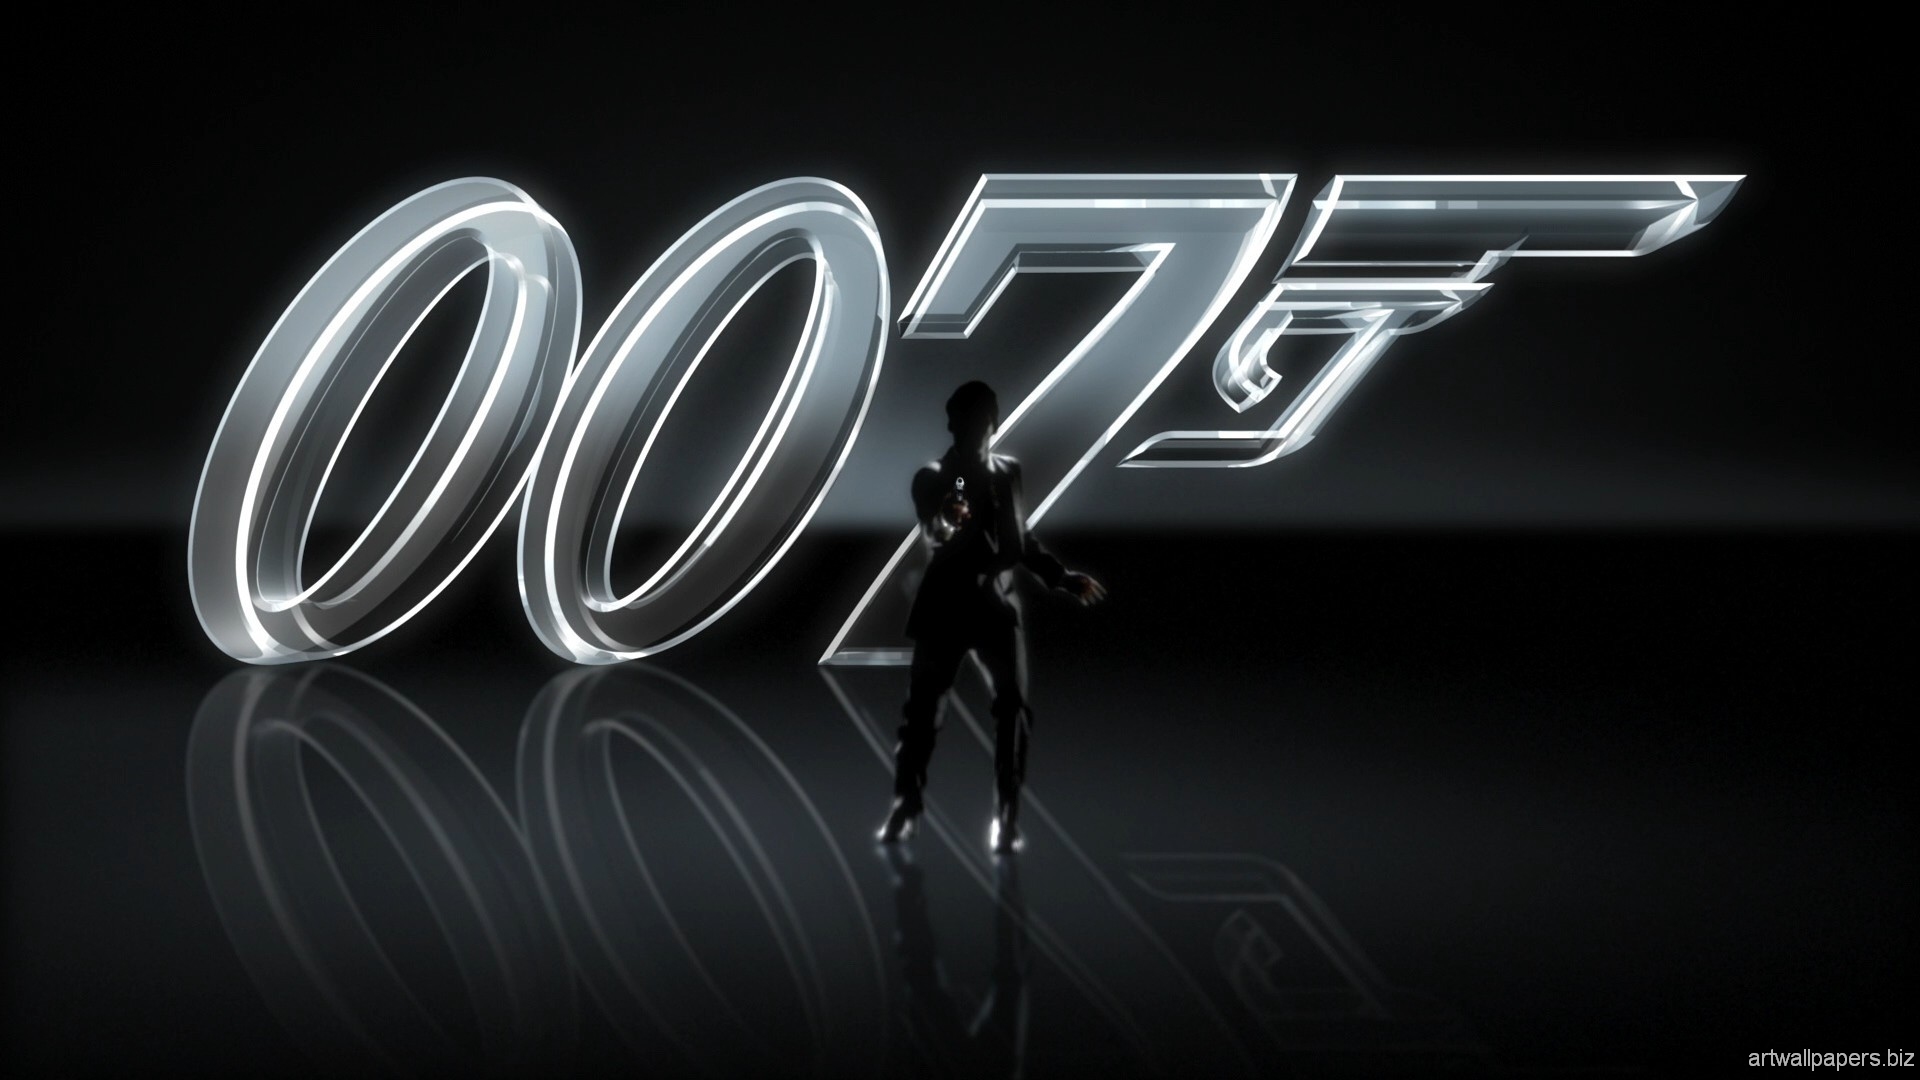 james bond 007 fond d'écran,texte,police de caractère,conception graphique,graphique,ténèbres